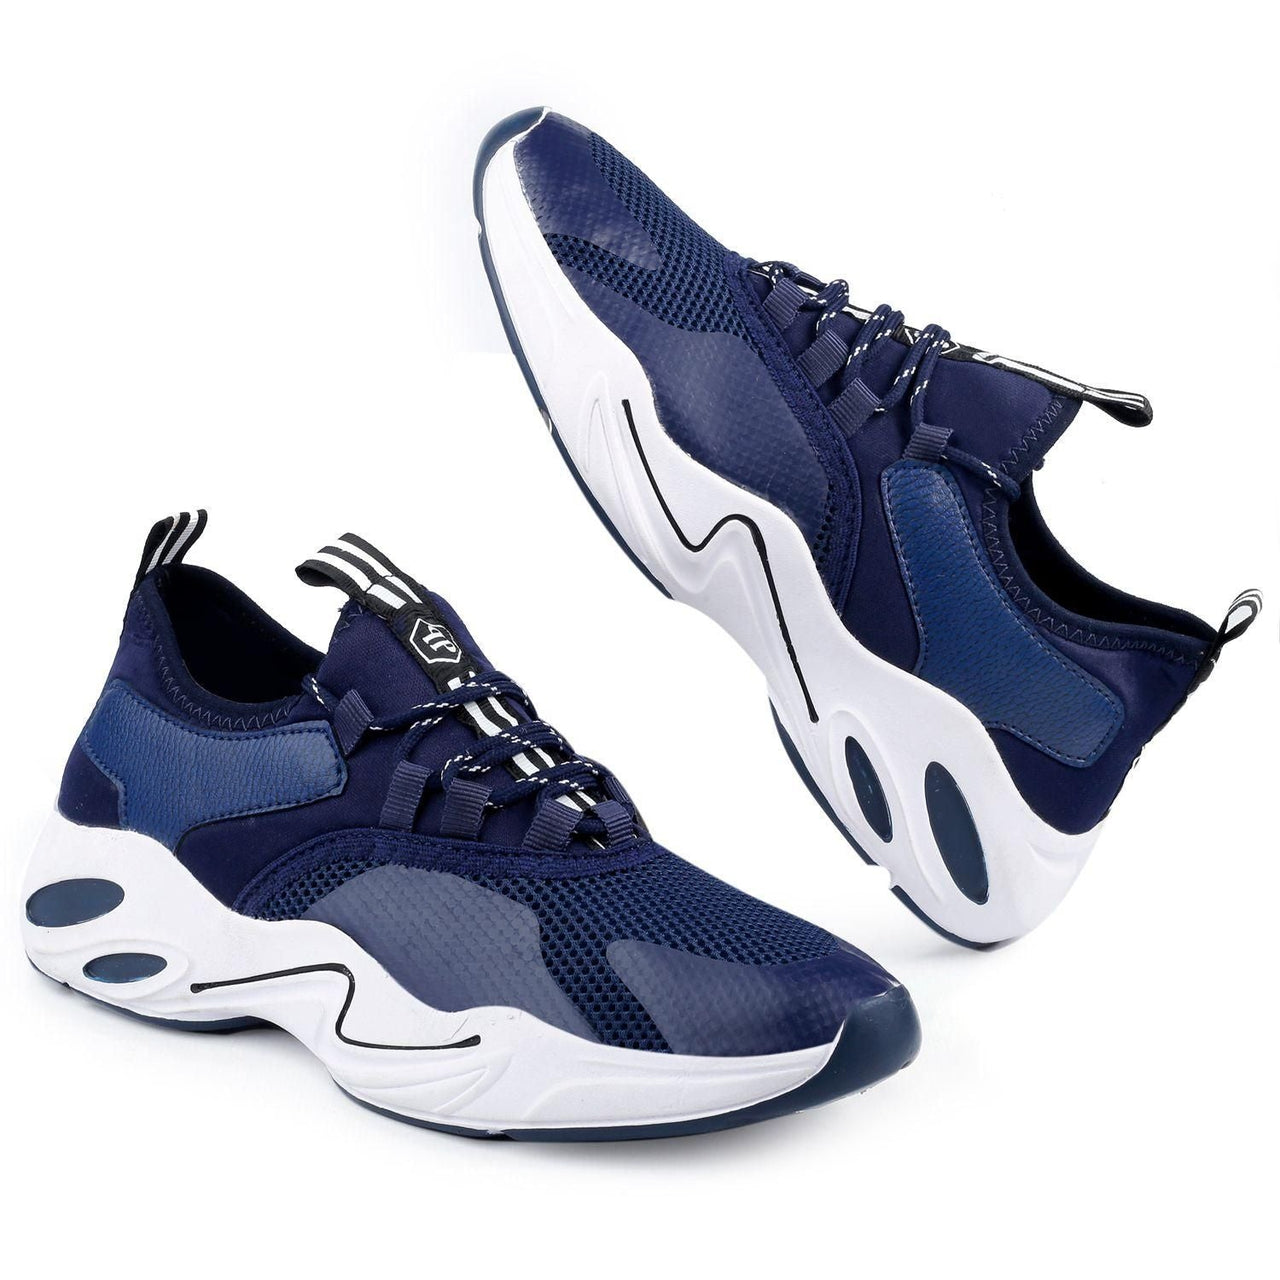 Imcolus Men's Airmix Lace Up Sports Shoes